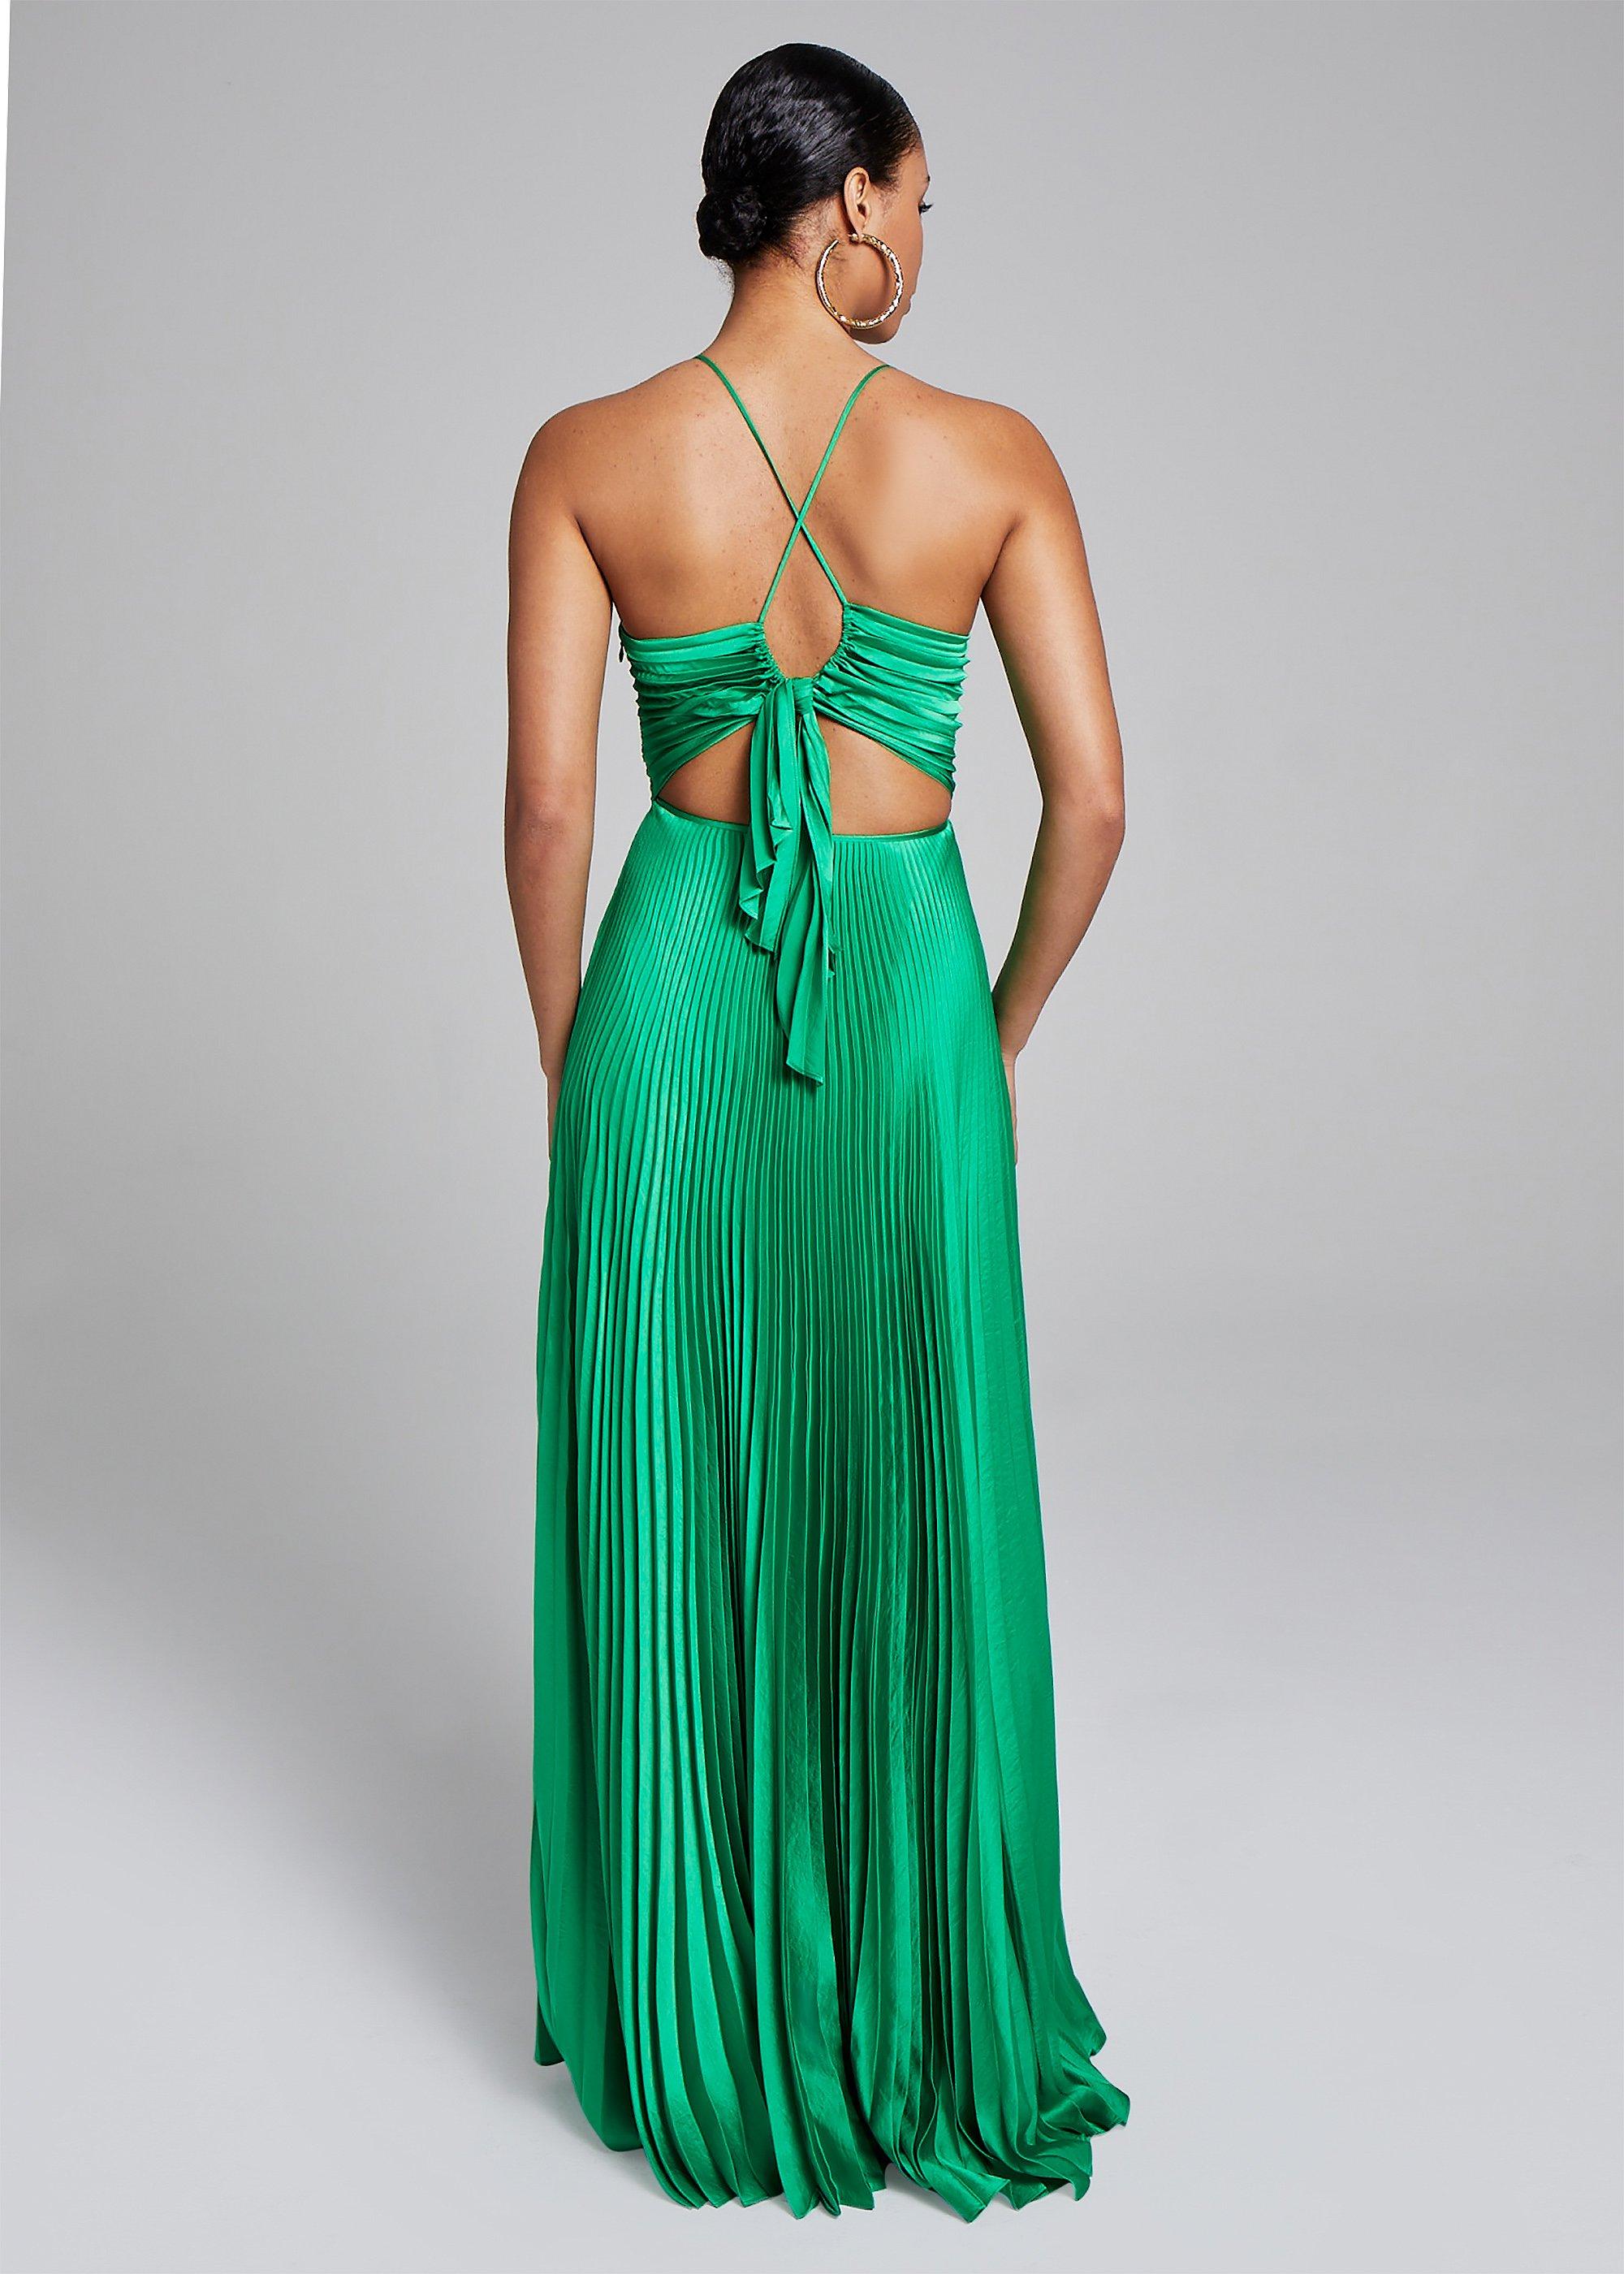 A.L.C. Aries Dress in Green | Lyst